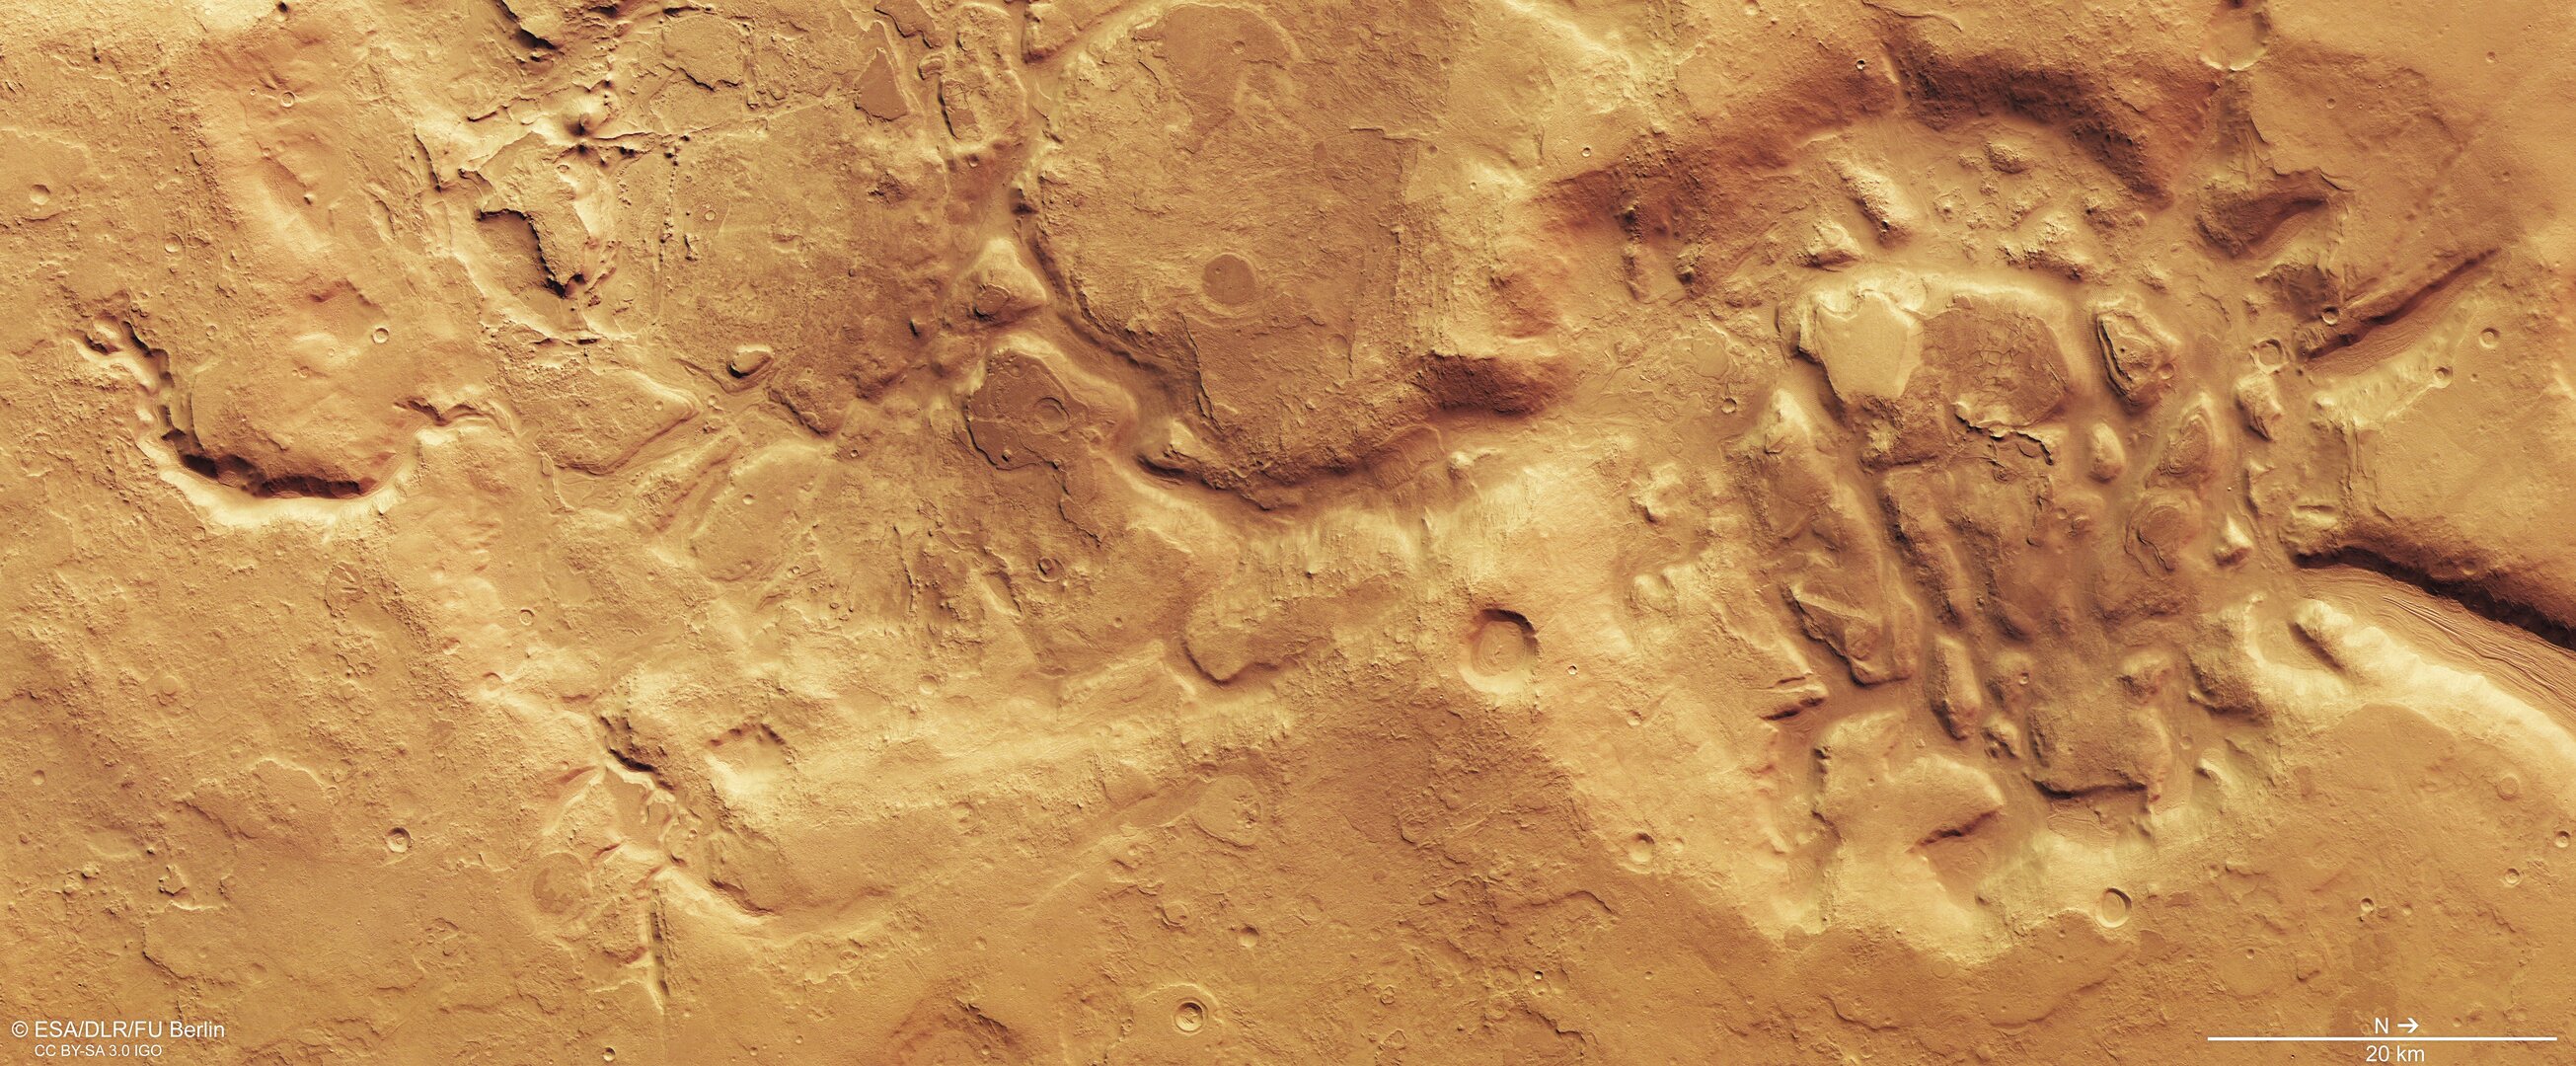 Zerfressenes Gebiet auf dem Mars